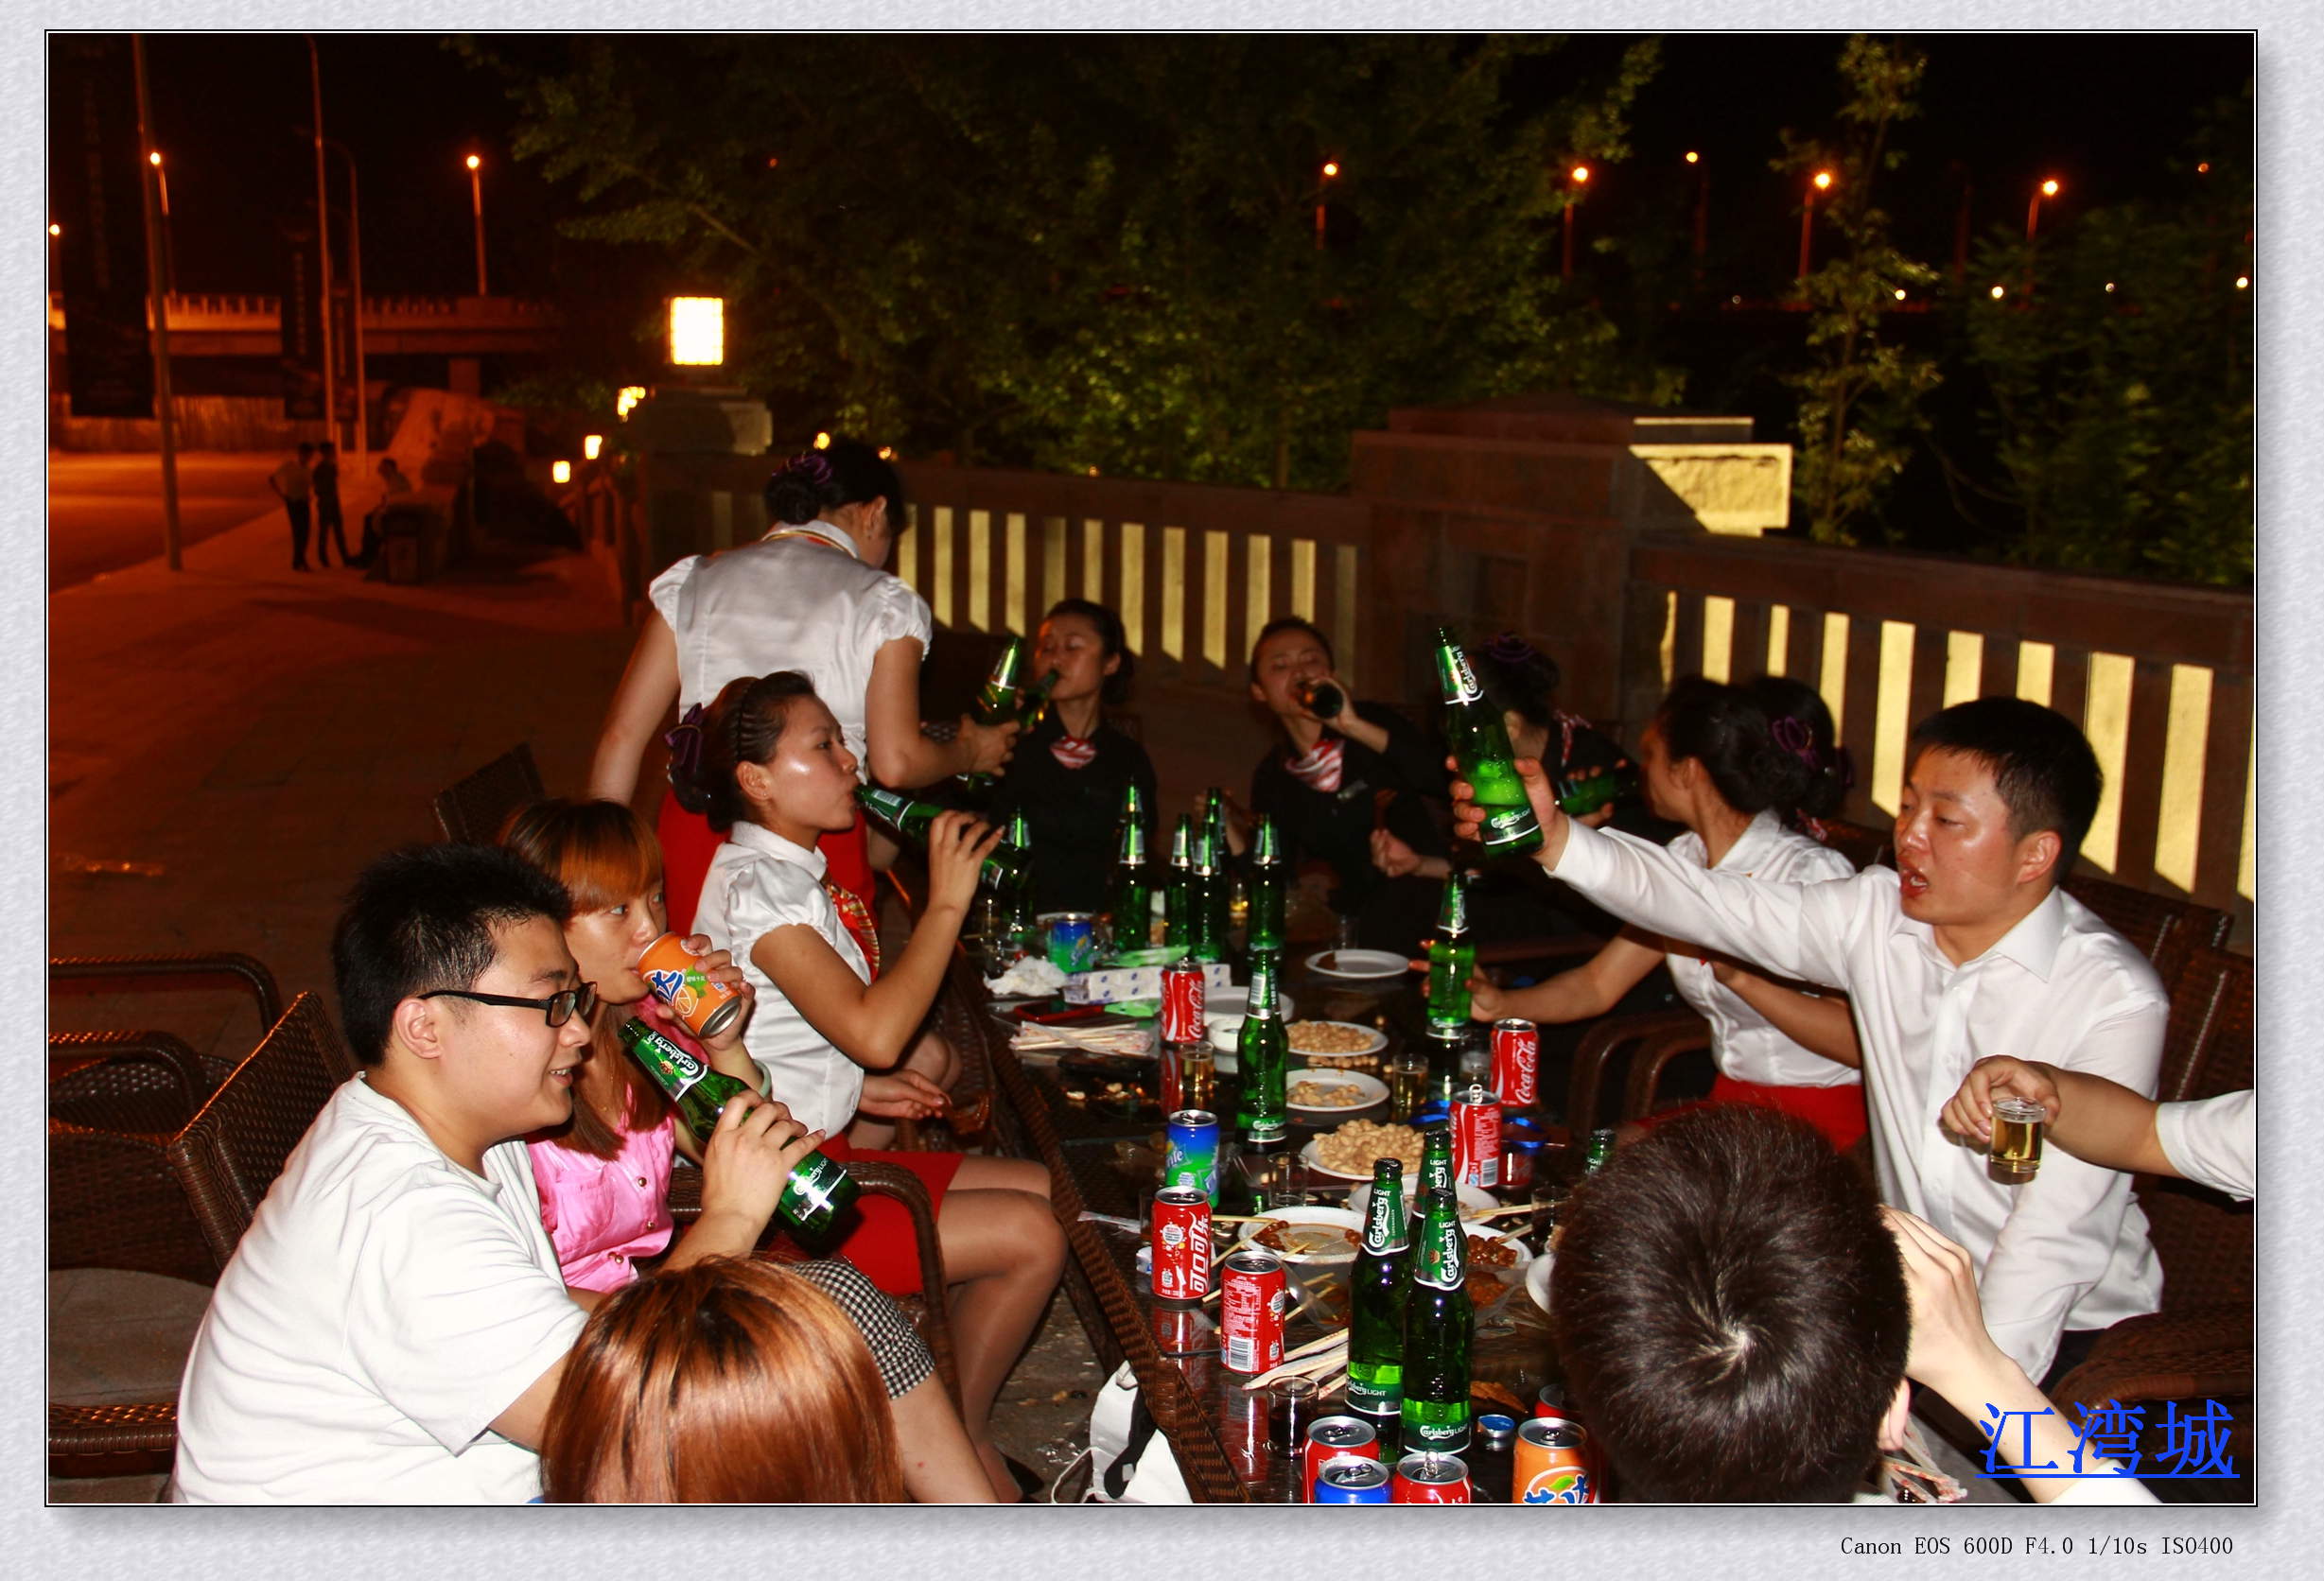 人们在酒吧喝酒照片摄影图片_ID:153426363-Veer图库